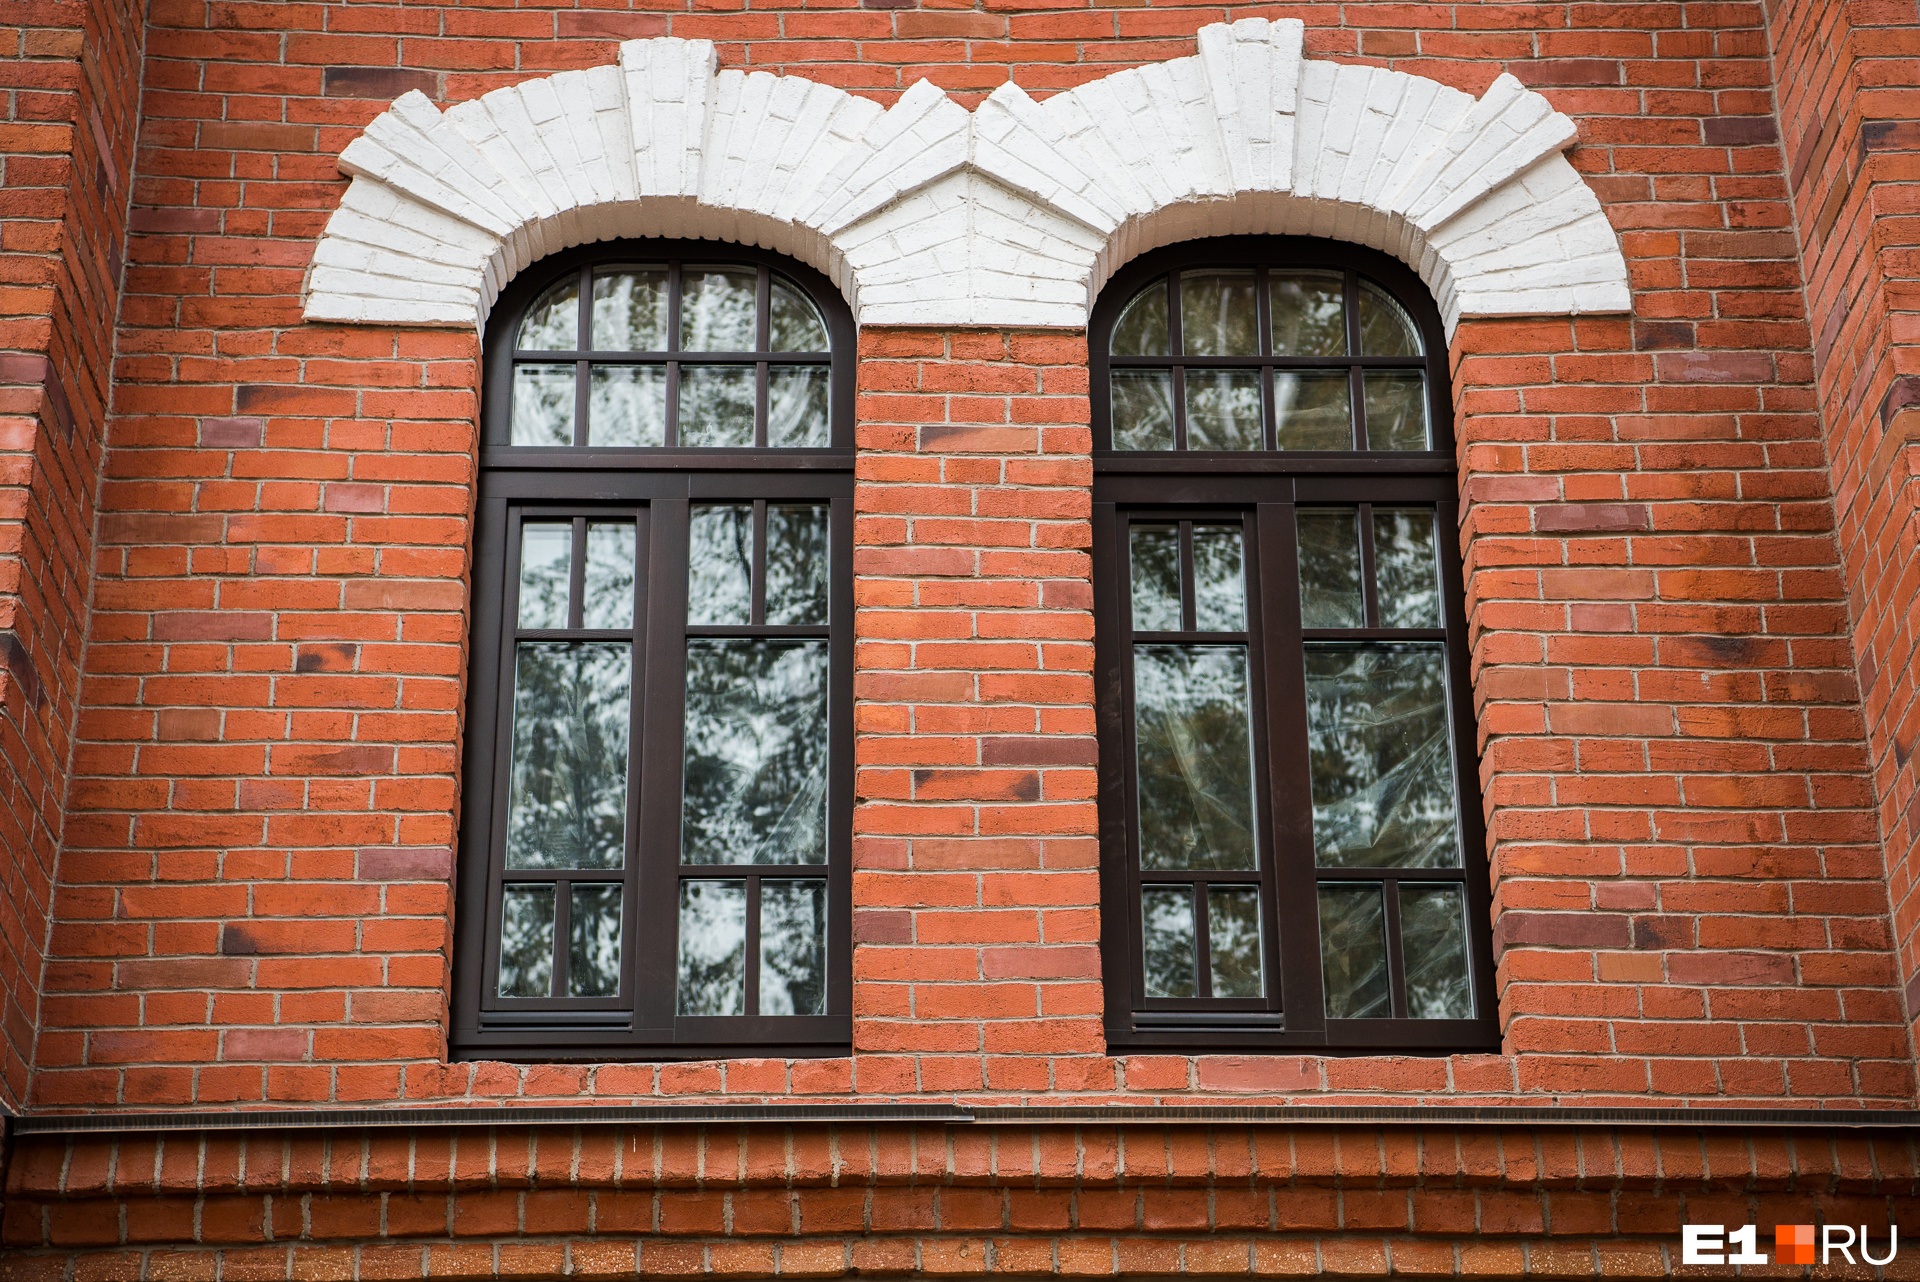 Окно воссоздано в историческом виде. Его стоимость — около 80 тысяч рублей